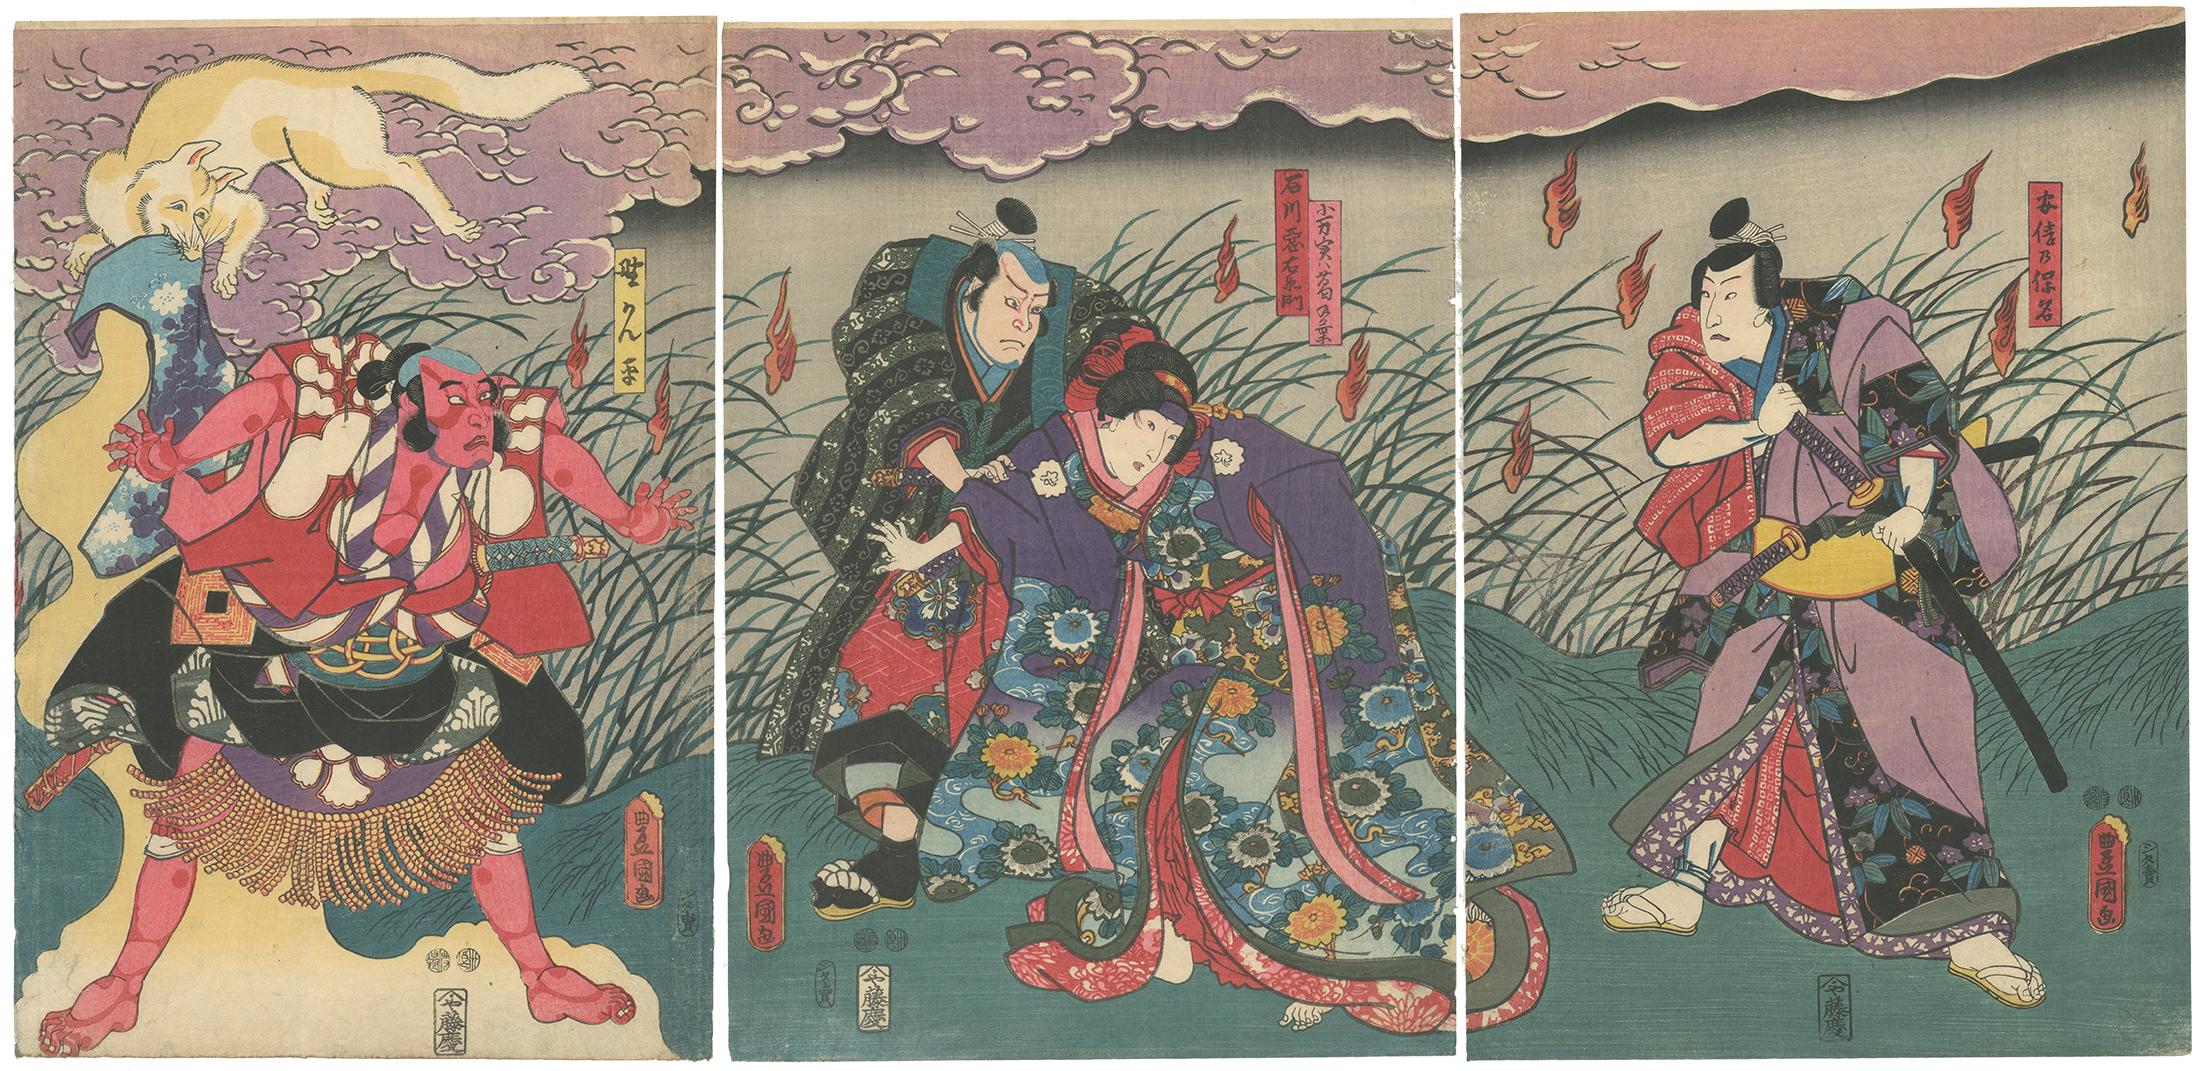 Utagawa Kunisada (Toyokuni III) Figurative Print - Toyokuni III, Kabuki Play, White Fox, Kimono Design, Japanese Woodblock Print